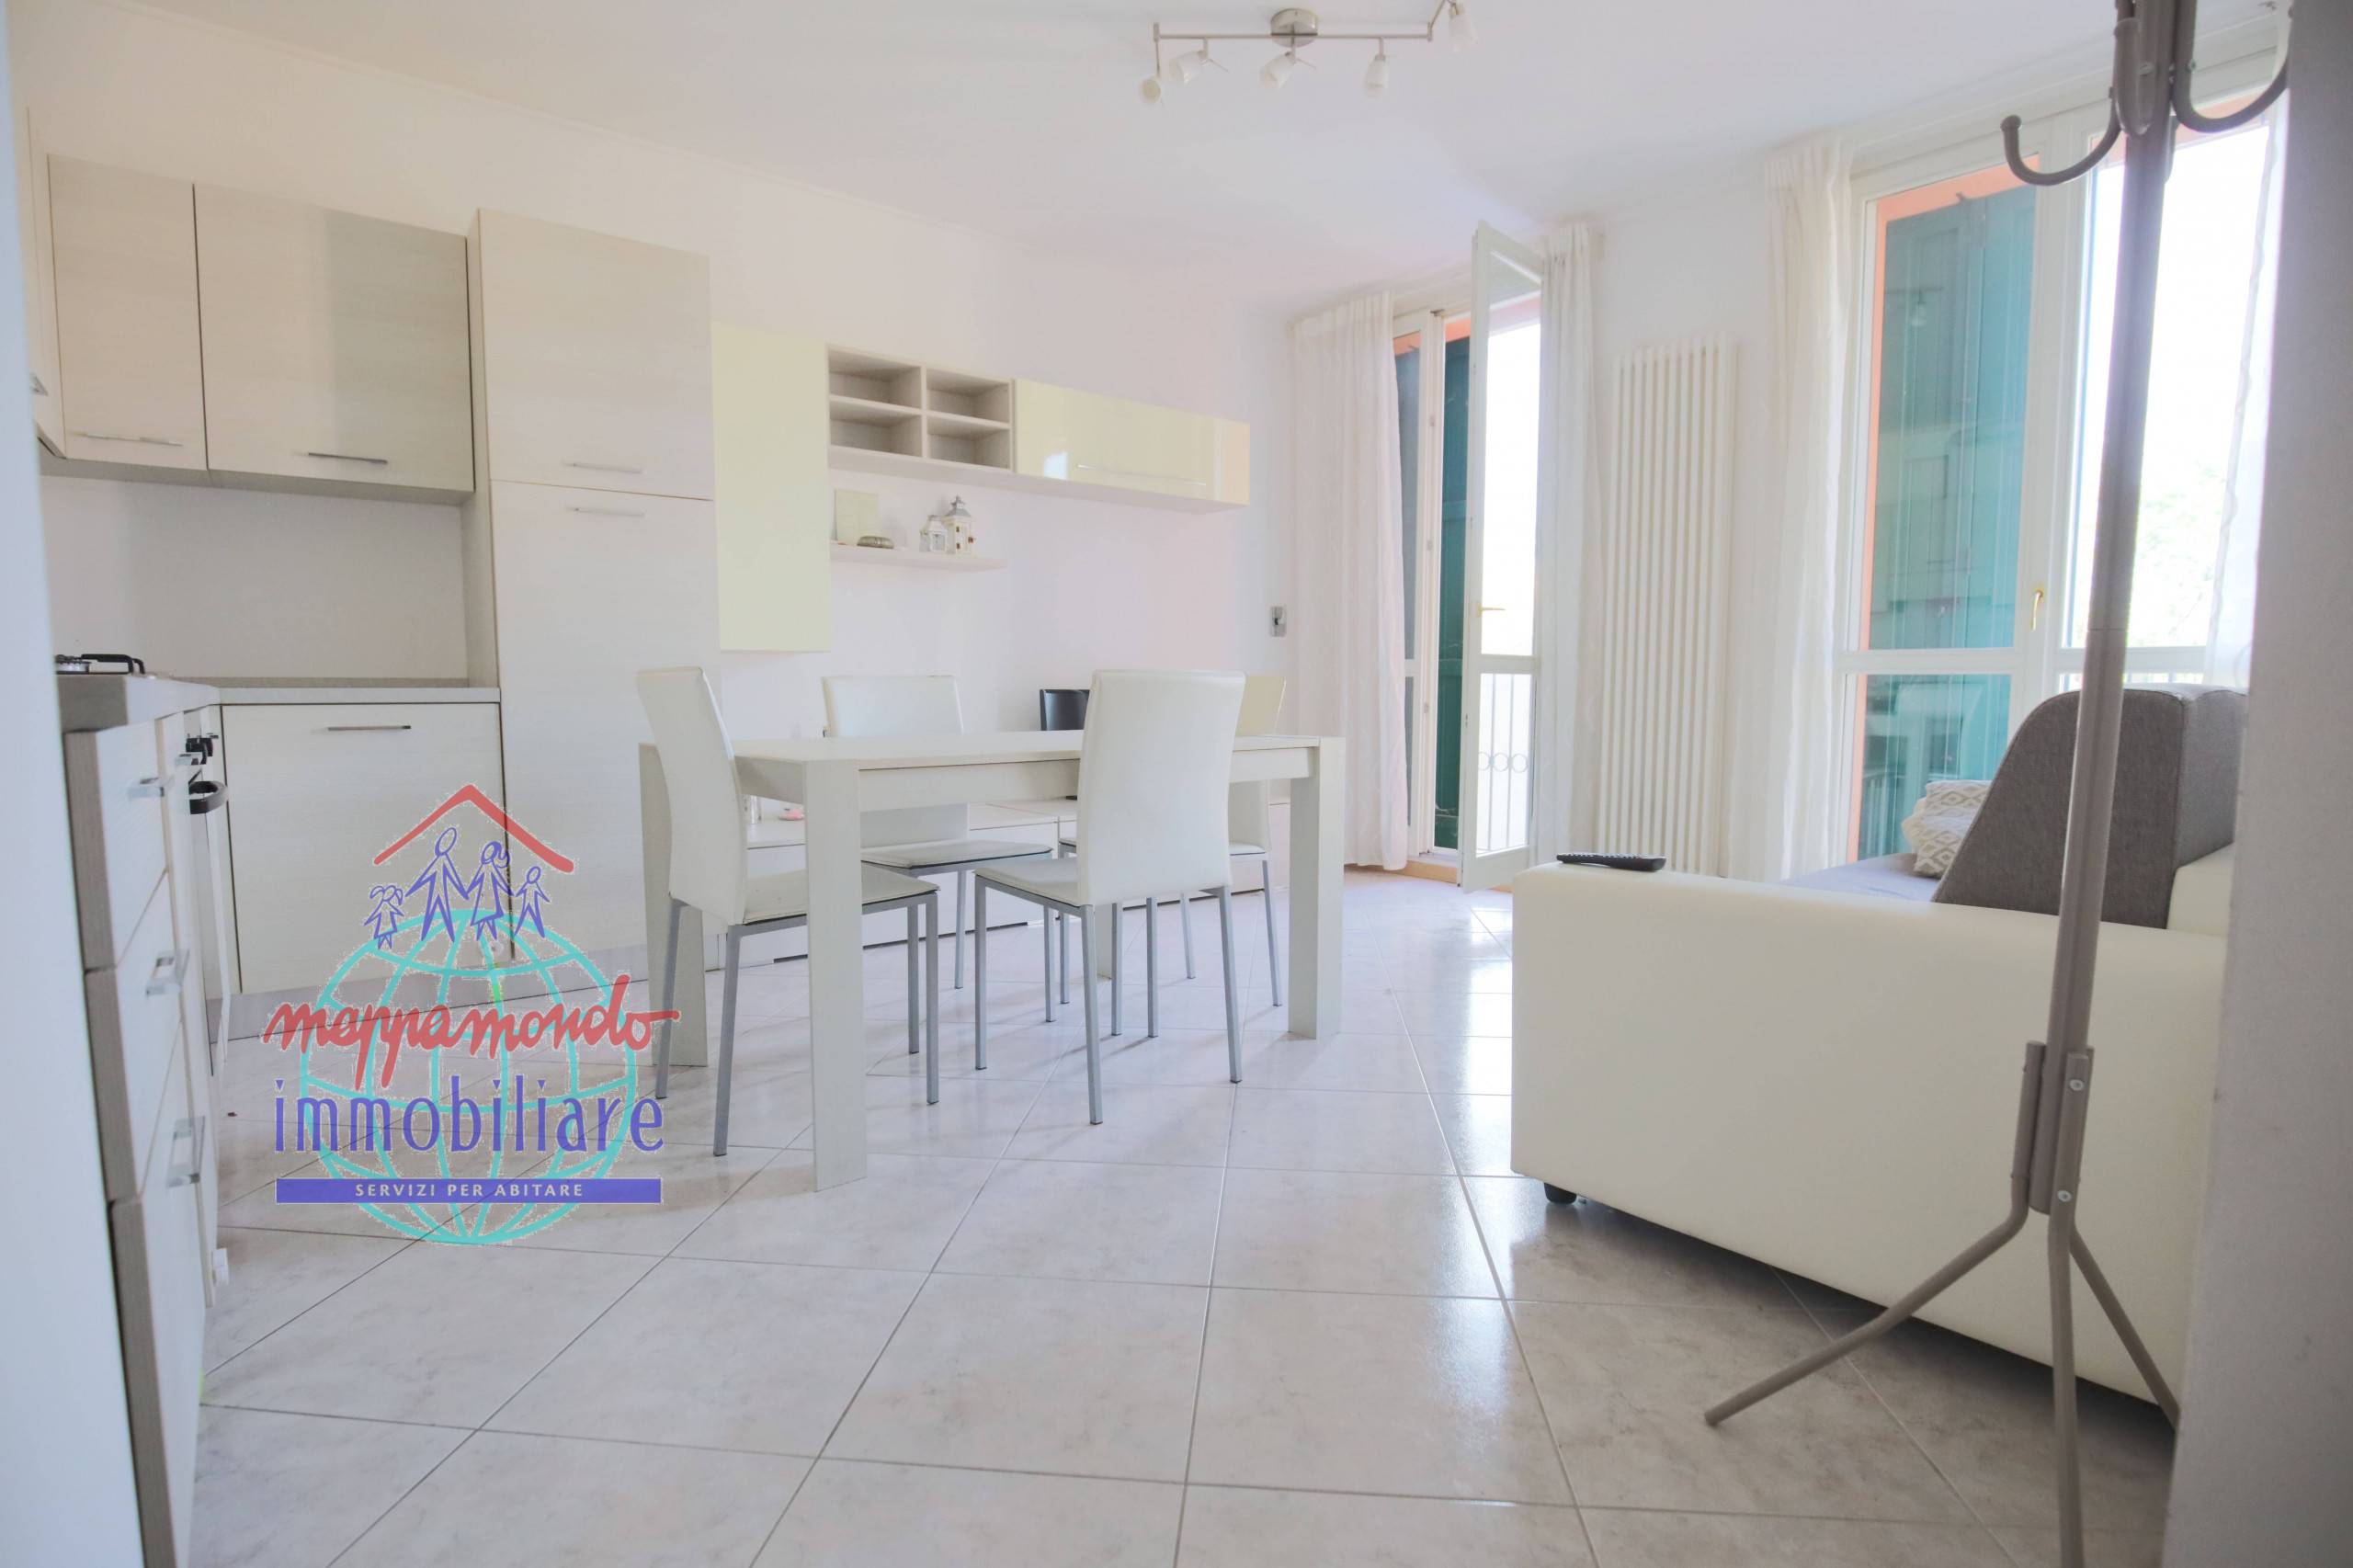 Appartamento in vendita a Cento, 3 locali, zona Località: Cento, prezzo € 134.000 | PortaleAgenzieImmobiliari.it